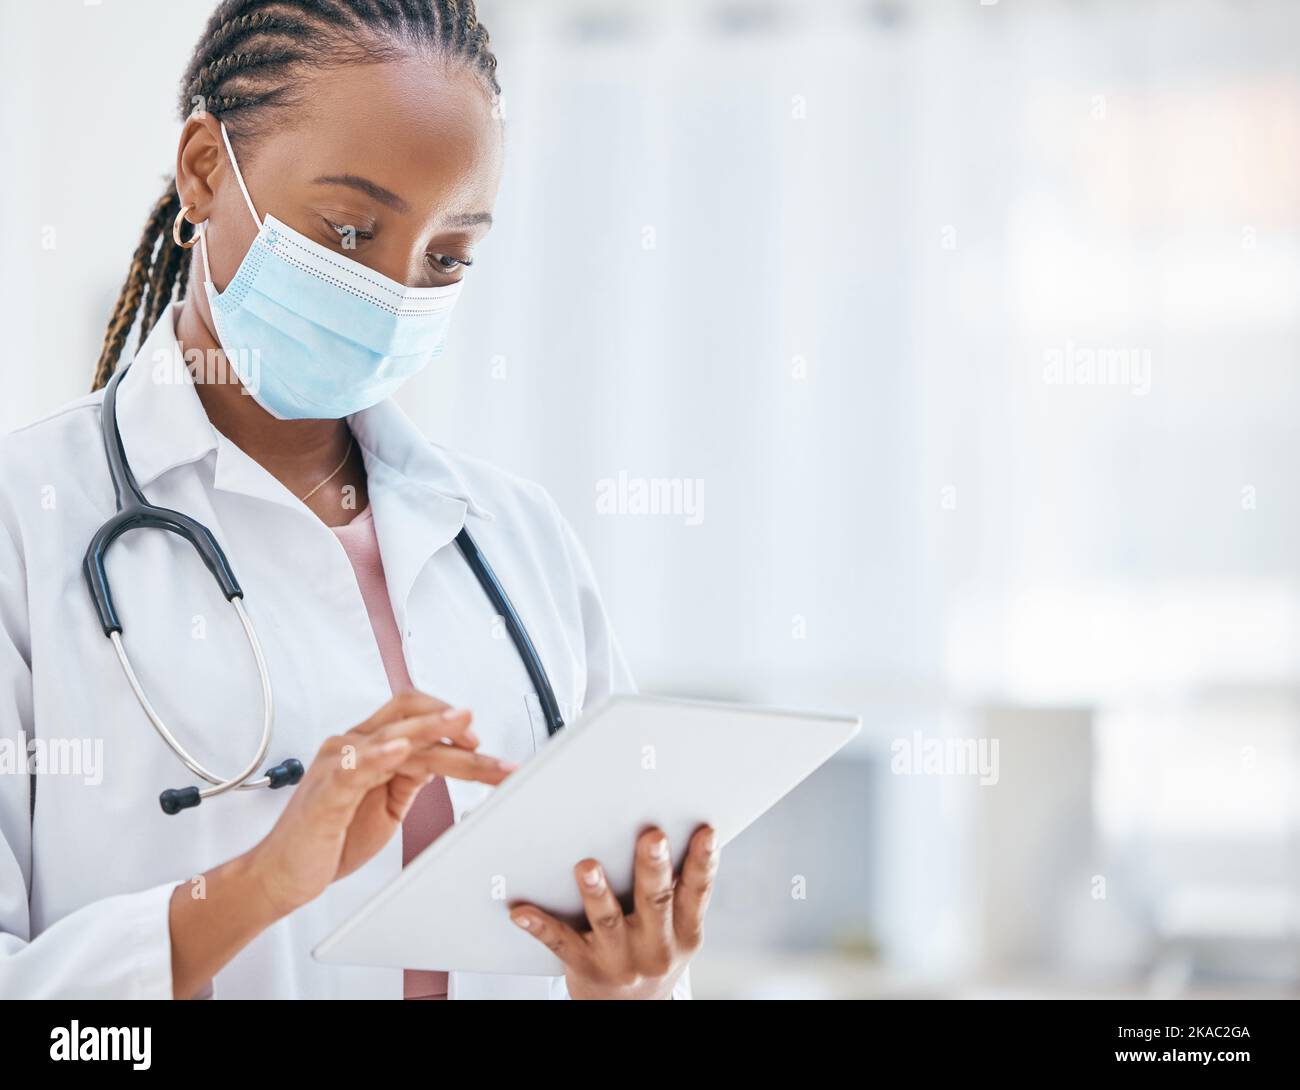 Médecin, tablette et covid dans la recherche en santé, la navigation ou la planification de rendez-vous à l'hôpital. Femme ou médecin généraliste afro-américain Banque D'Images